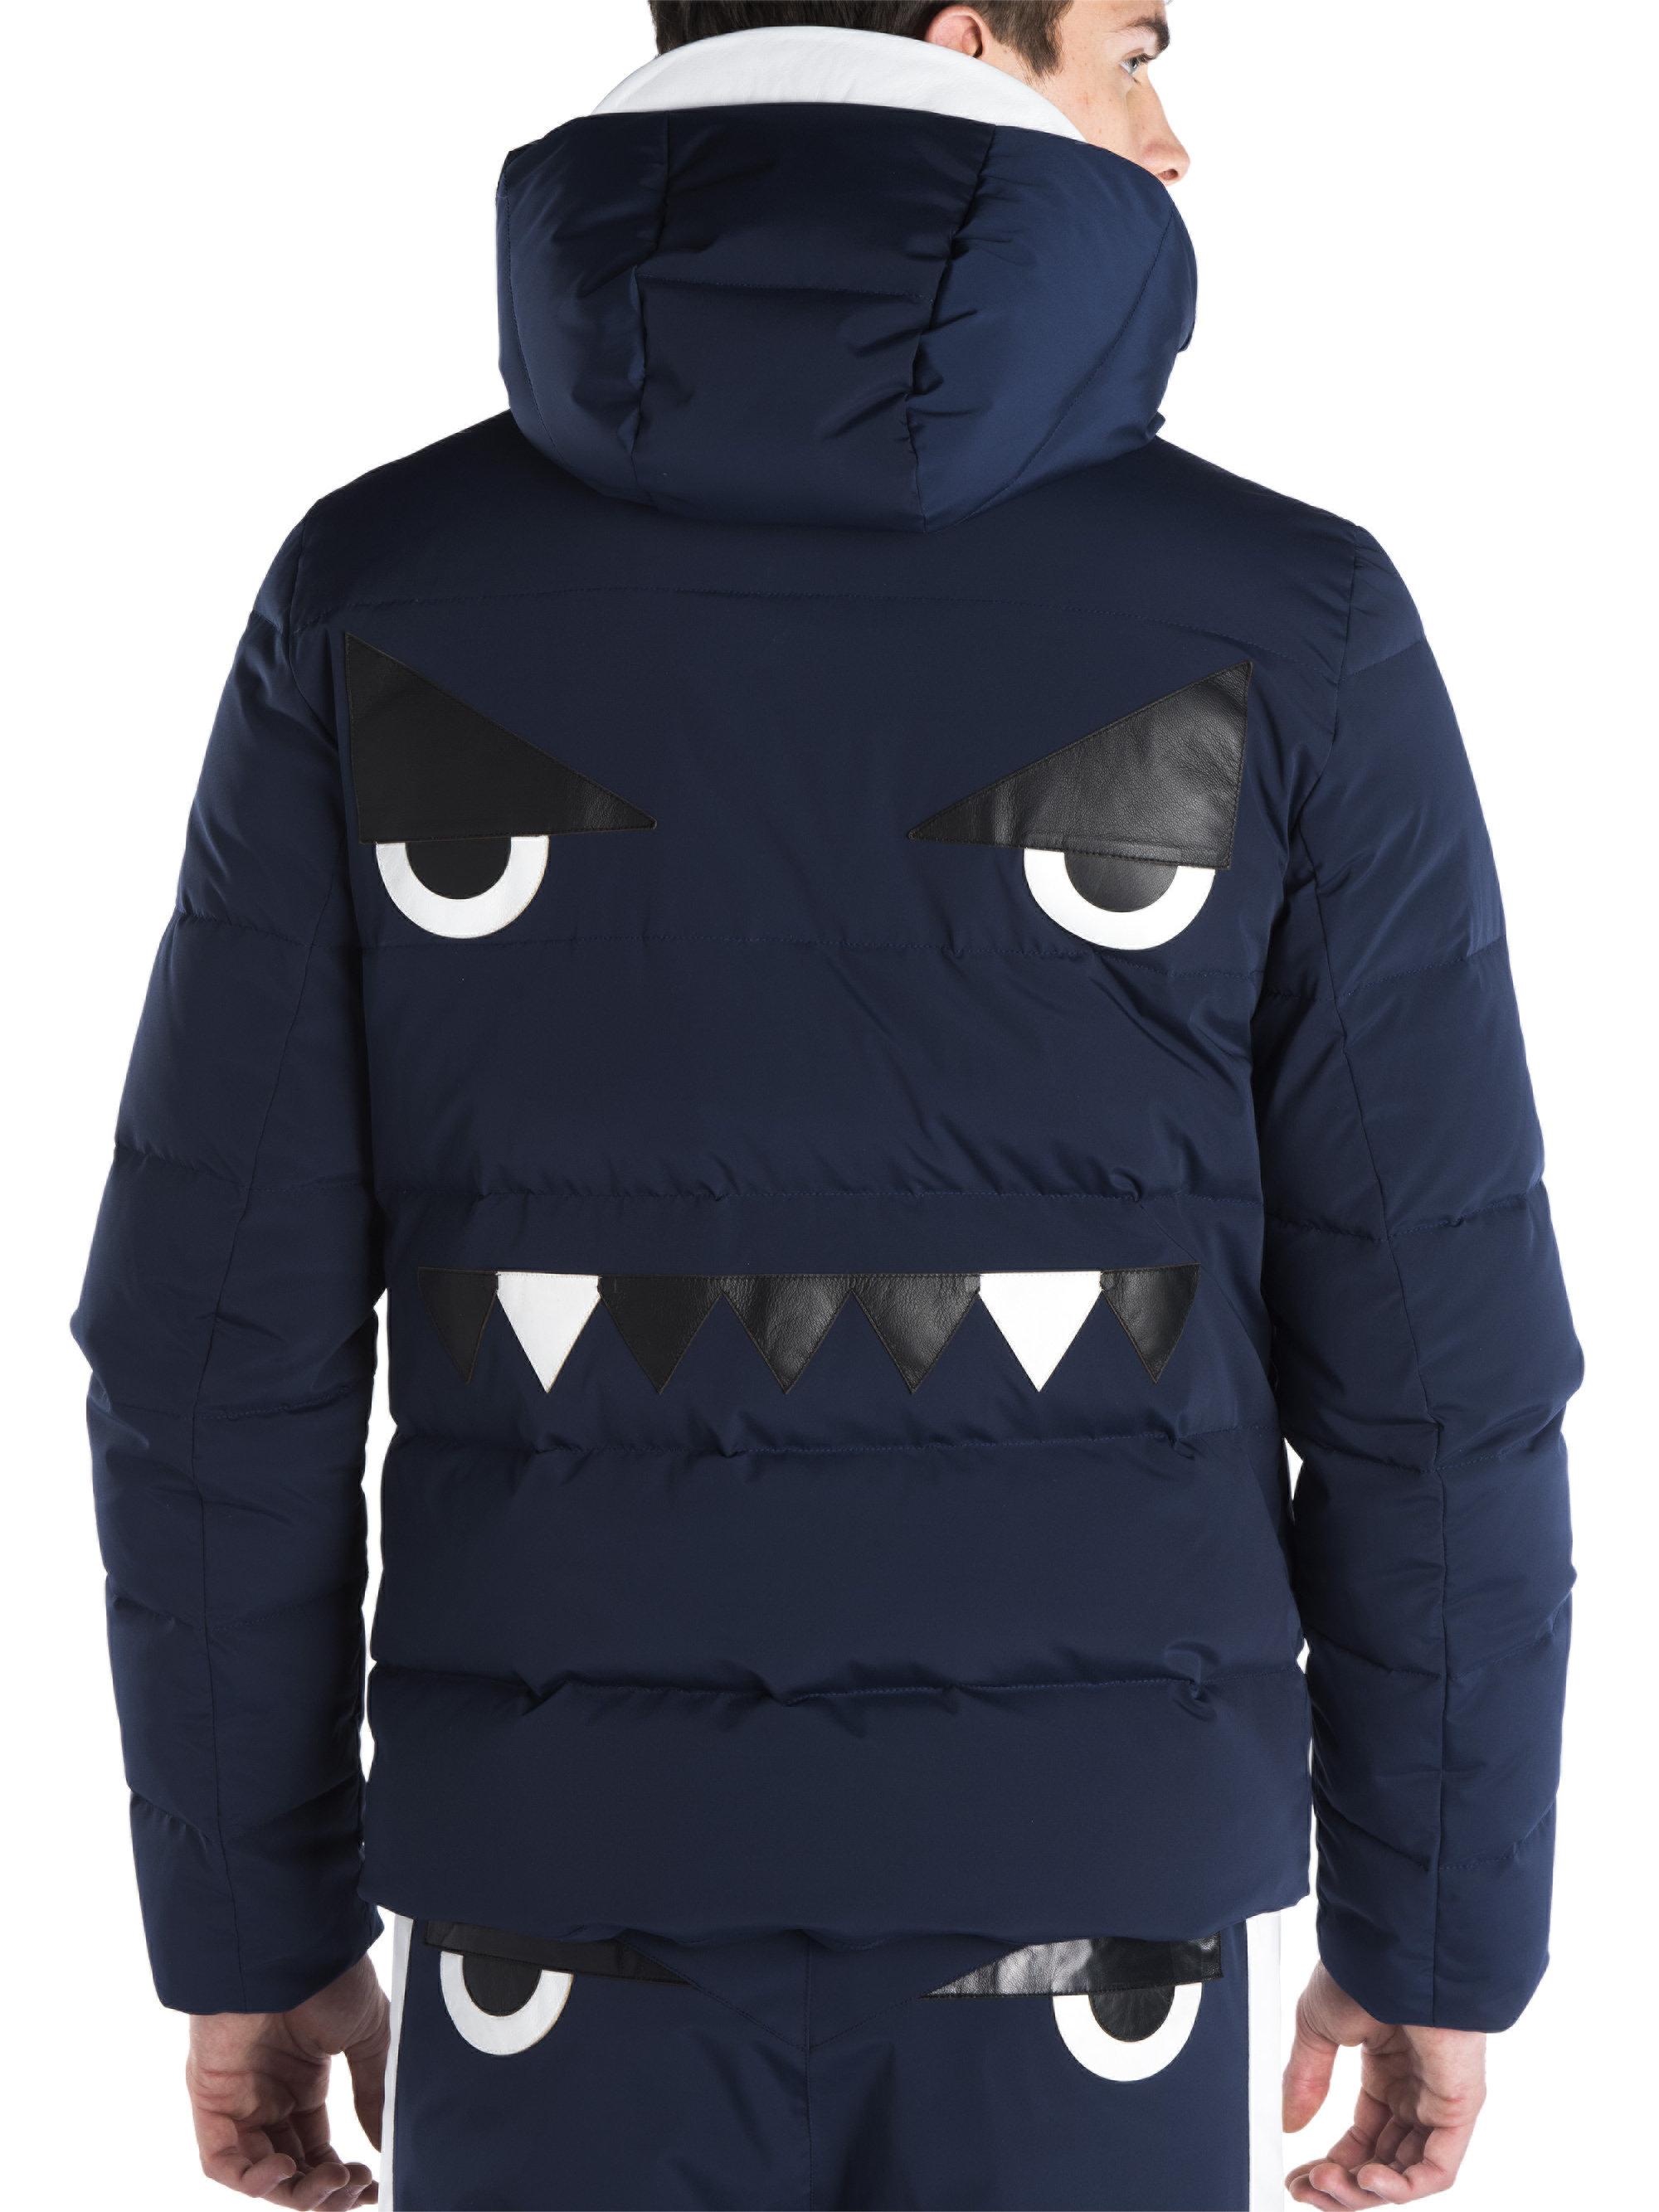 Fendi Puffer Monster Eyes Jacket in Blue for Men - Lyst